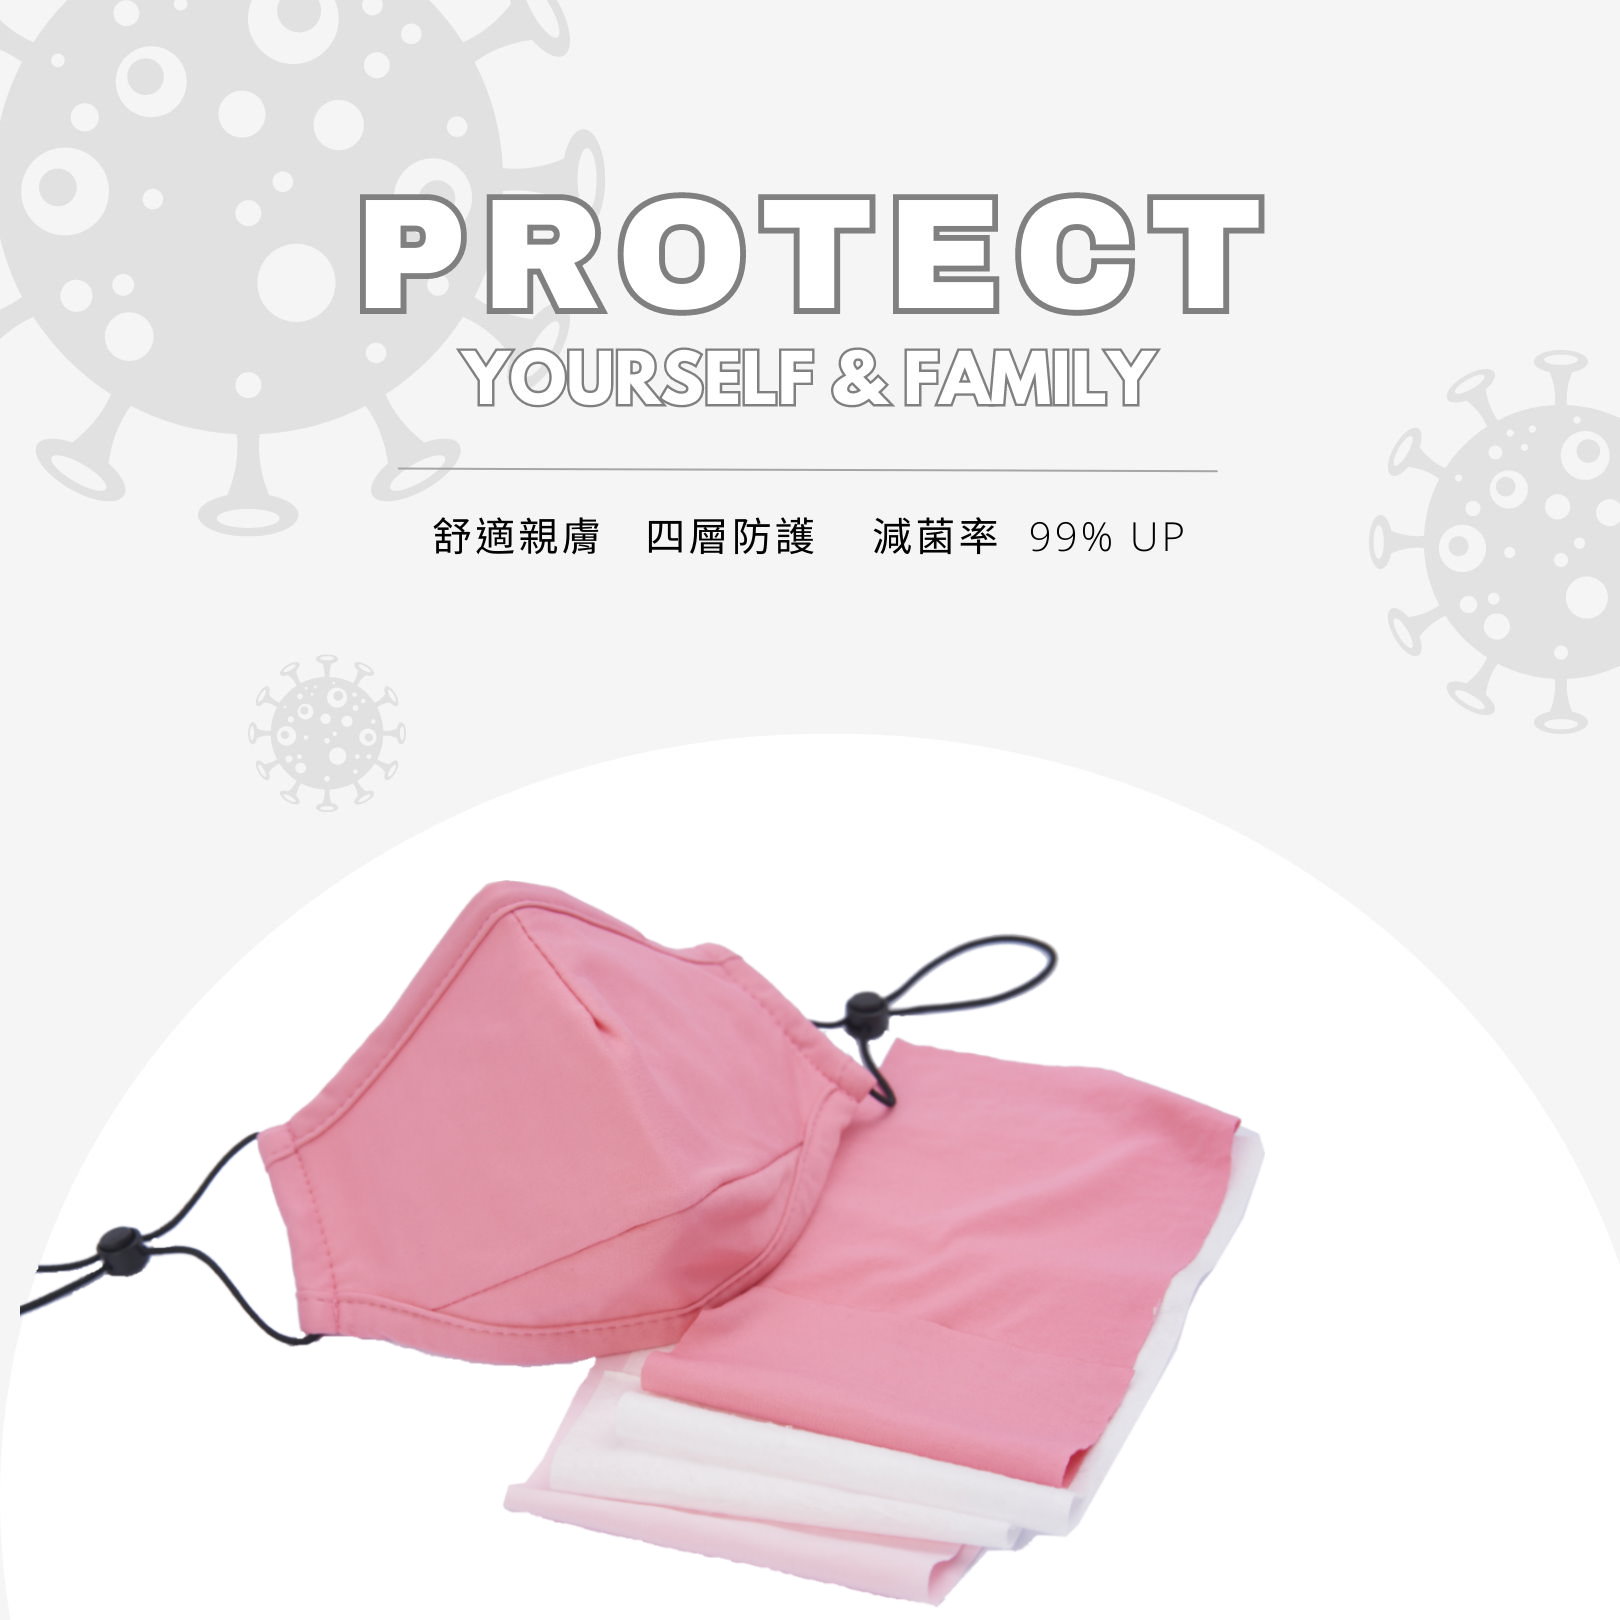 高效舒適防塵減菌口罩